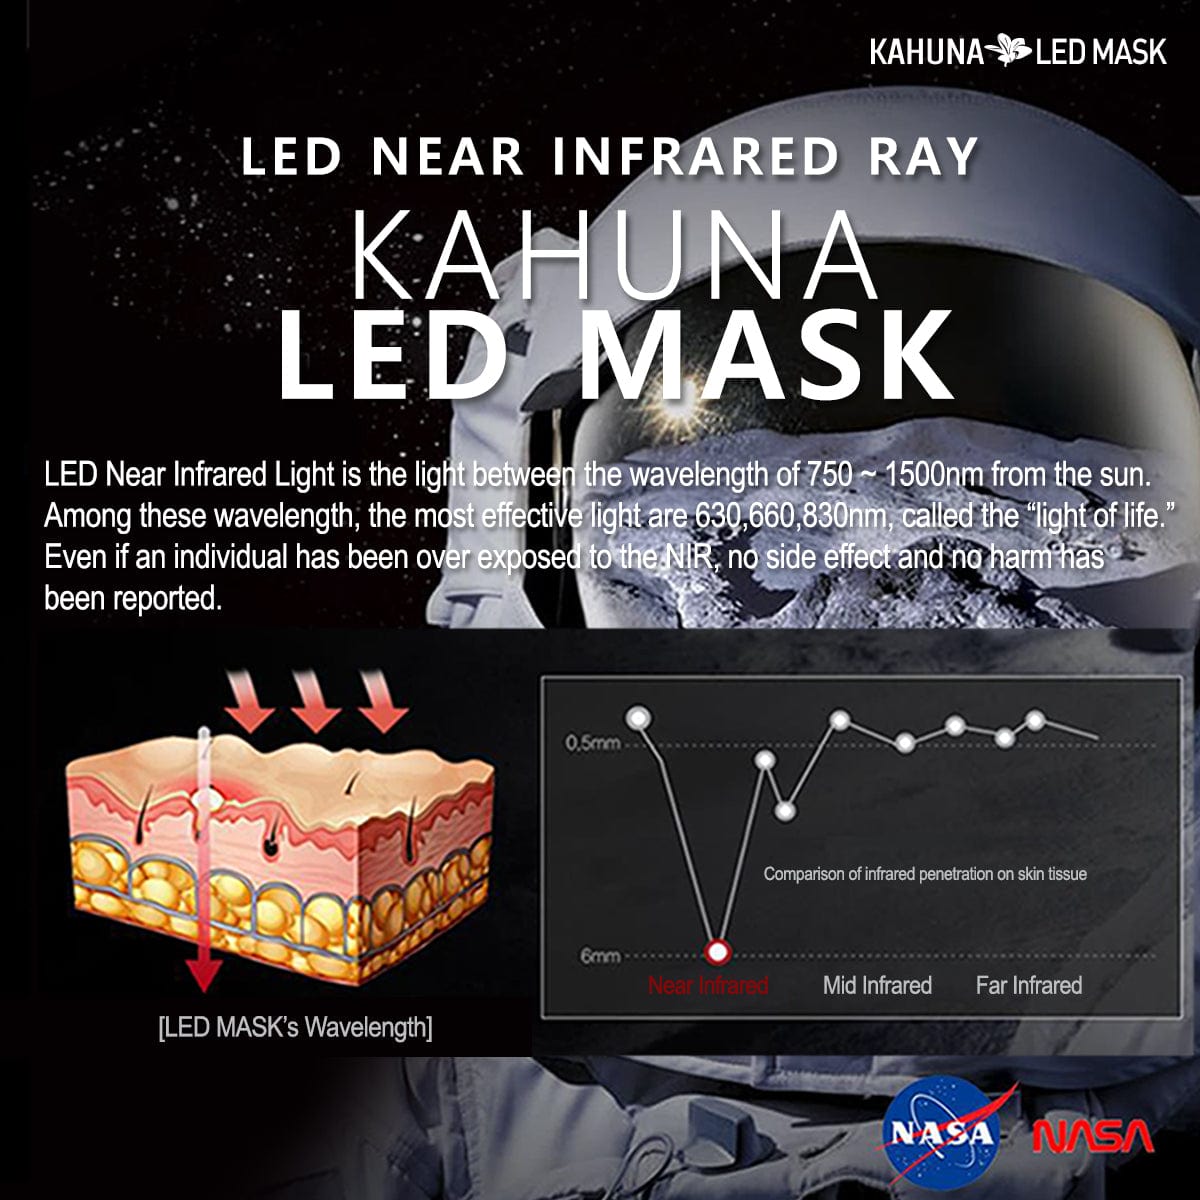 Kahuna LED Mask – Rosegold / White